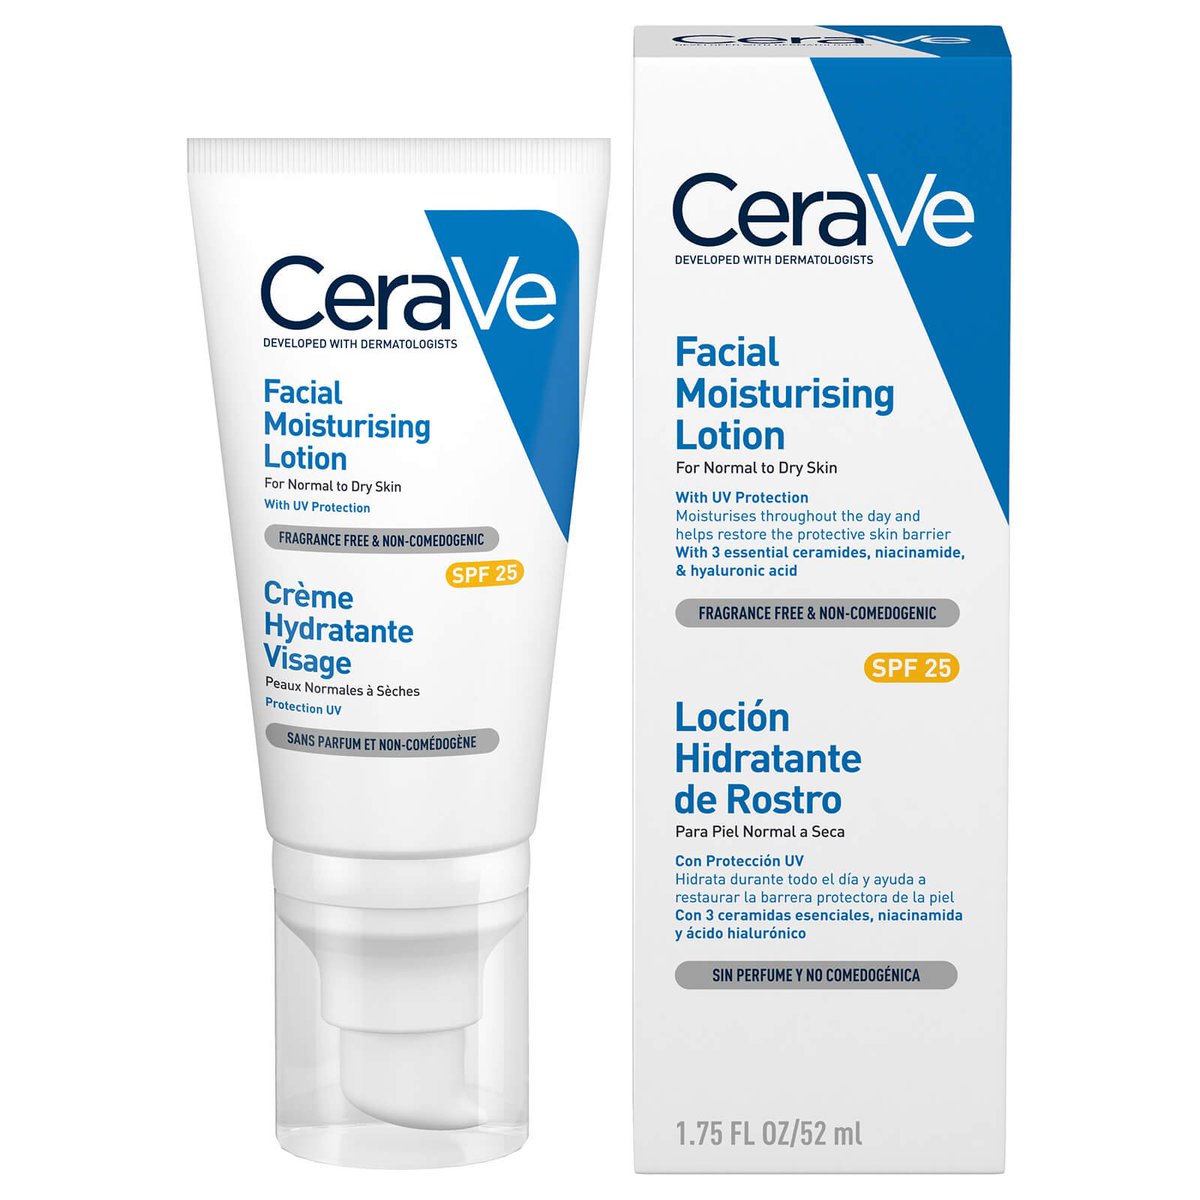 Korang jugak boleh guna sunscreen yang ada niacinamide which boleh kurangkan redness on skin. Contoh: Cerave facial moisturizing lotion, La Roche-Posay double repair moisturiser.